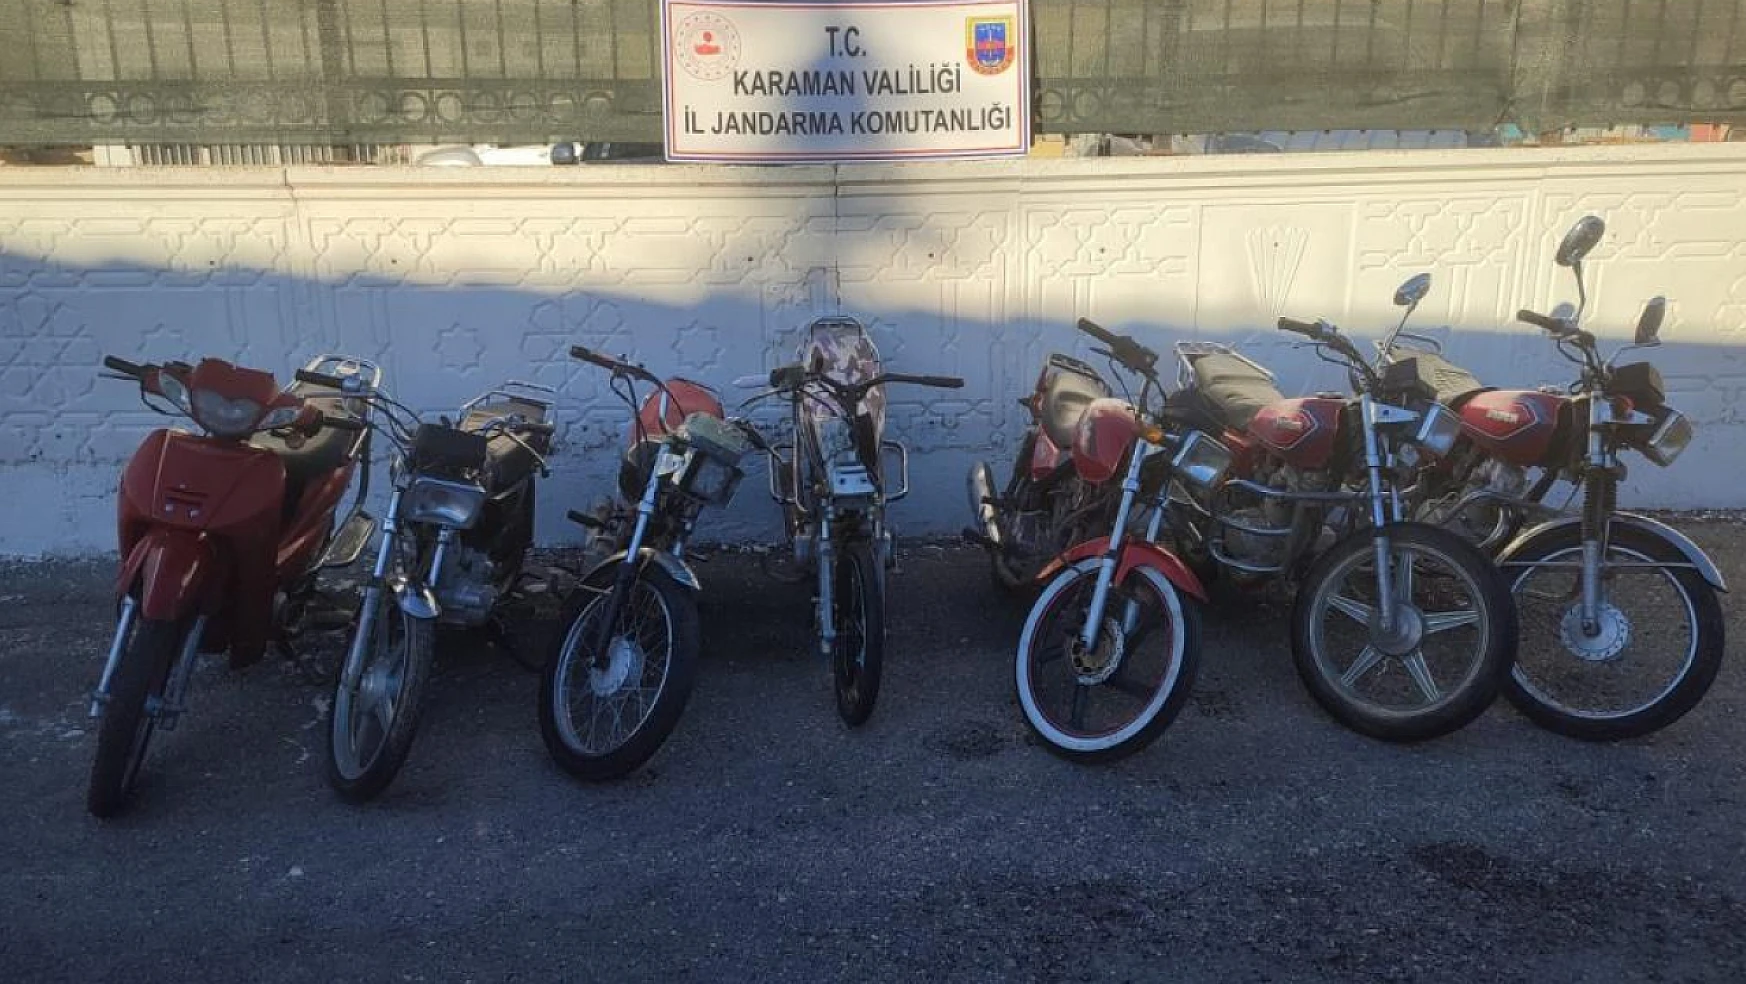 Karaman'da 9 çalıntı motosiklet ve tarihi eserler ele geçirildi